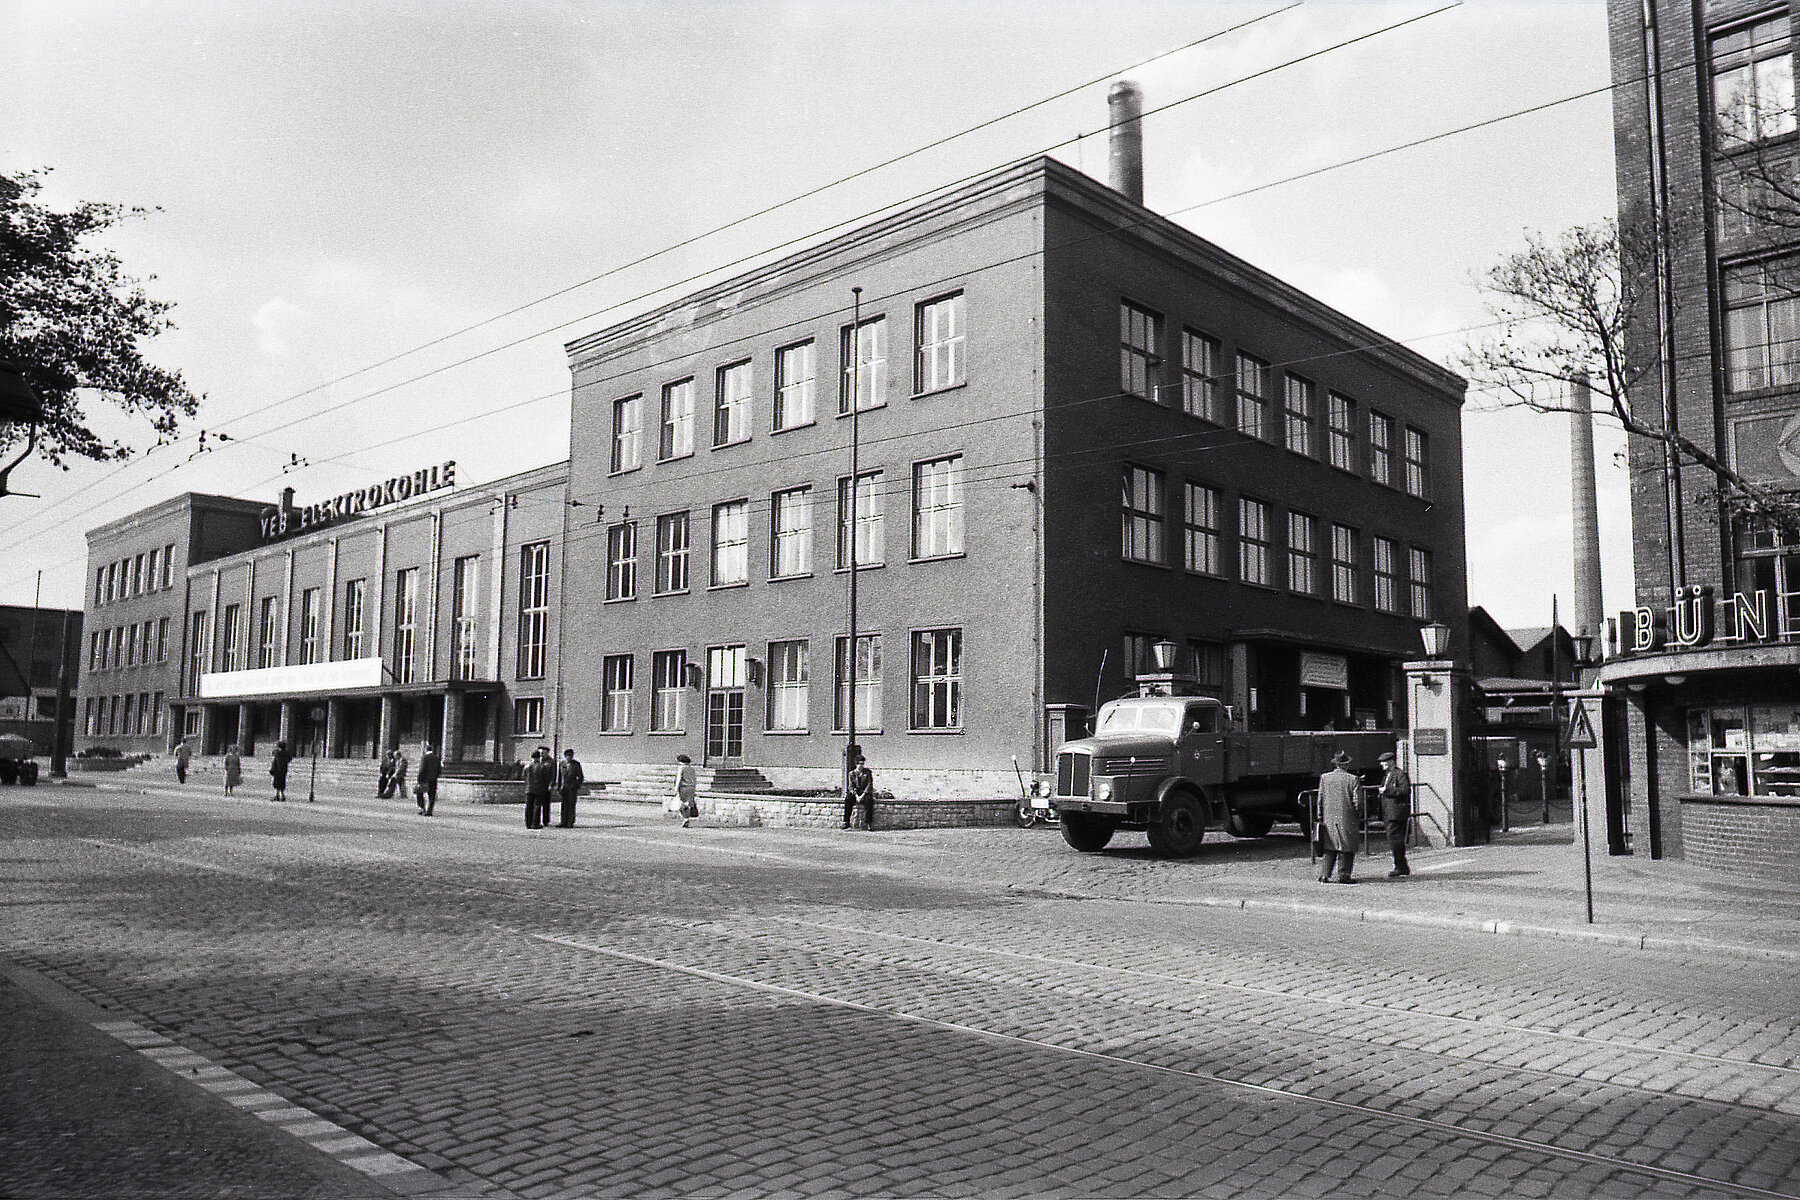 Kopfsteingepflasterte Straße mit einem großen Backsteinindustriegebäude im Hintergrund. Davor laufen Personen. Rechts des Gebäudes fährt ein Auto aus einer Einfahrt. 